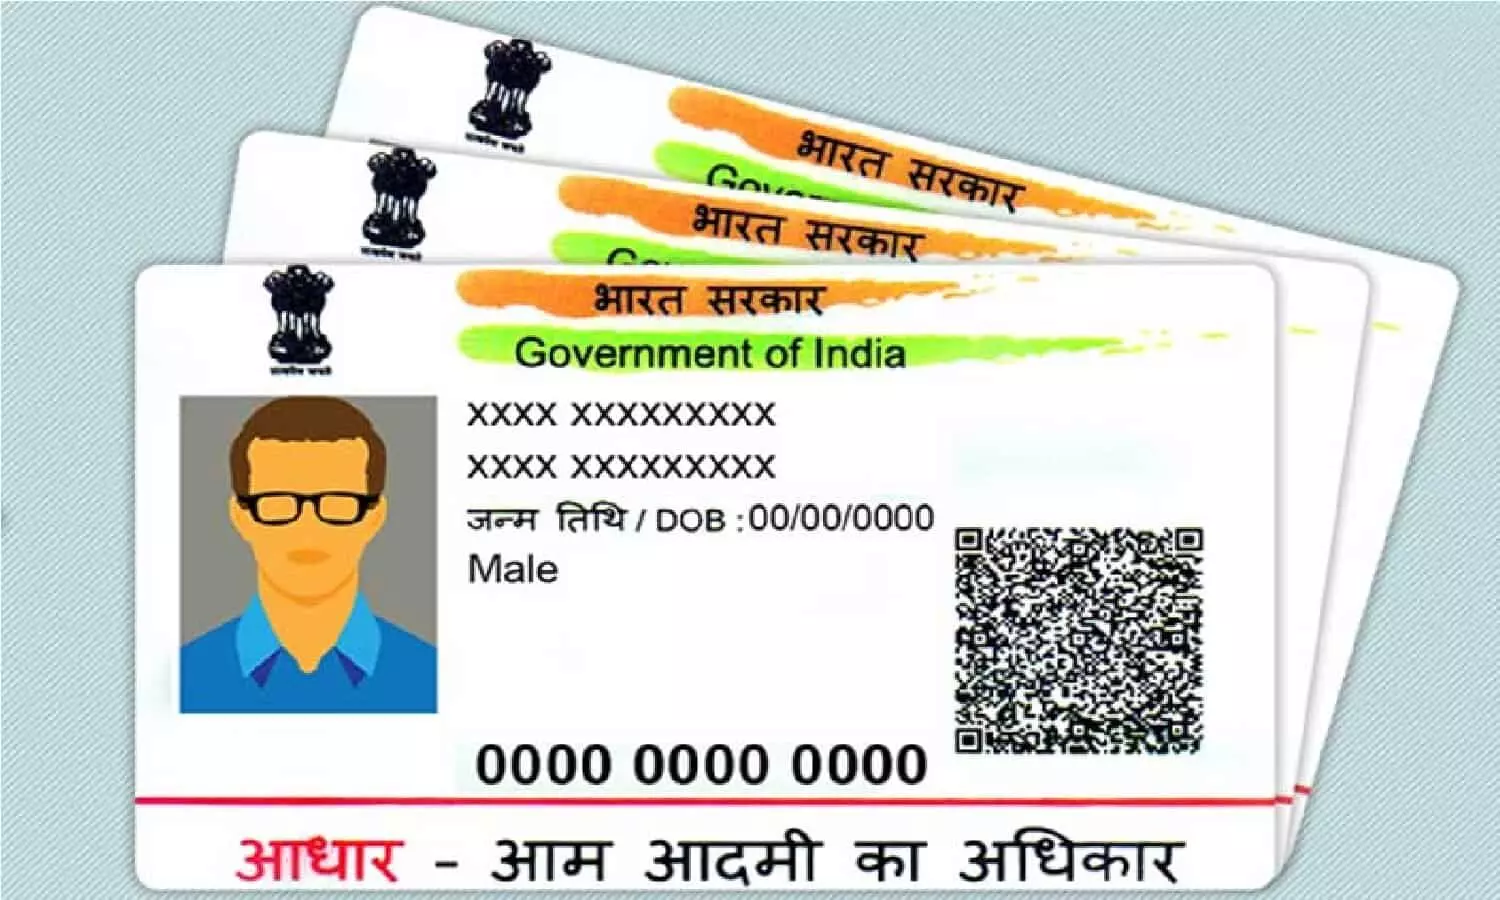 अभी-अभी आधार कार्ड को लेकर सरकार ने किया बड़ा ऐलान, 1 अक्टूबर से लागू होगा  नया नियम | Just now, the government has made a big announcement regarding  the Aadhaar card, the